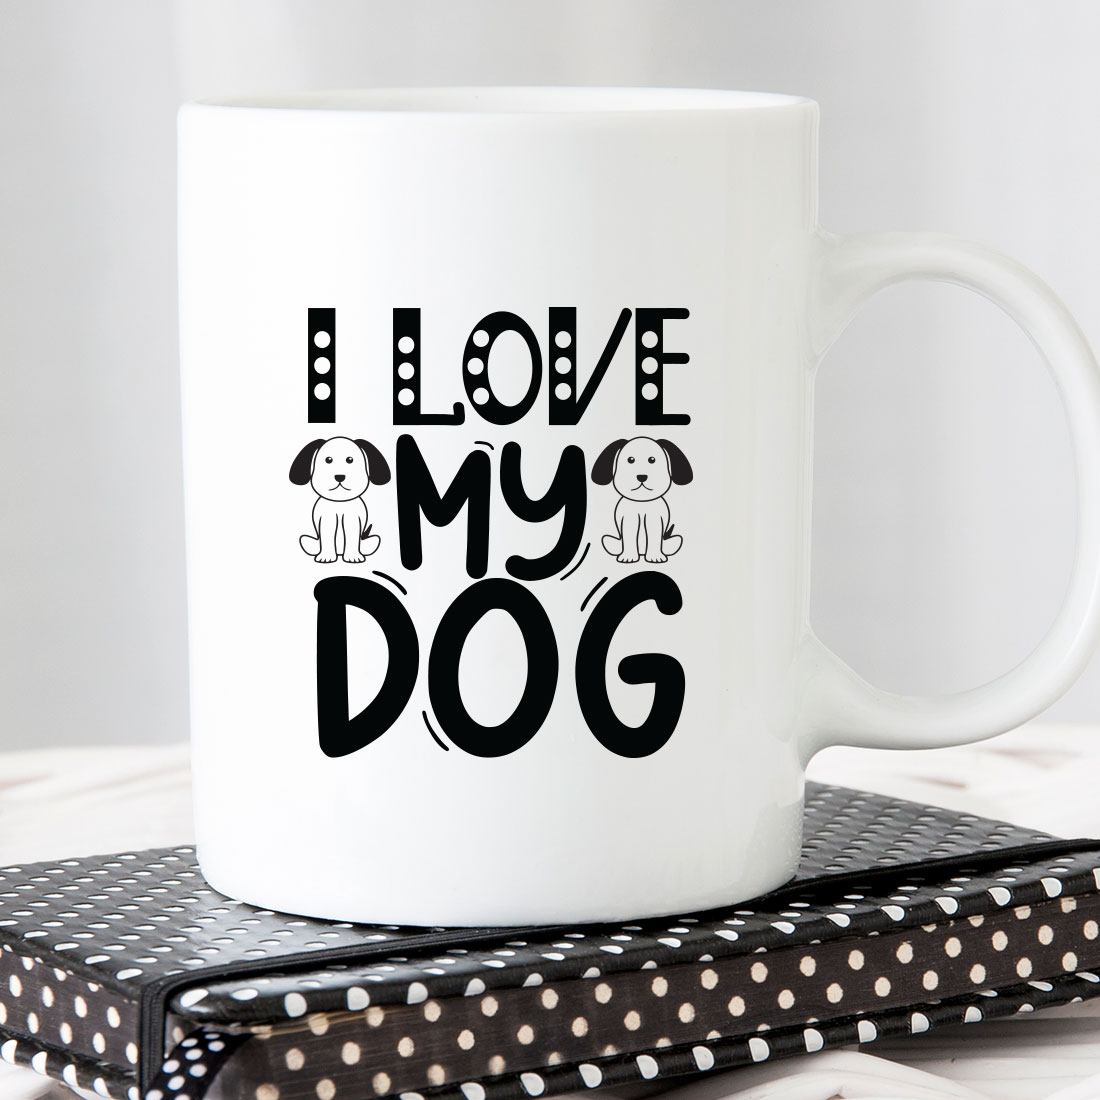 White coffee mug that says i love my dog.